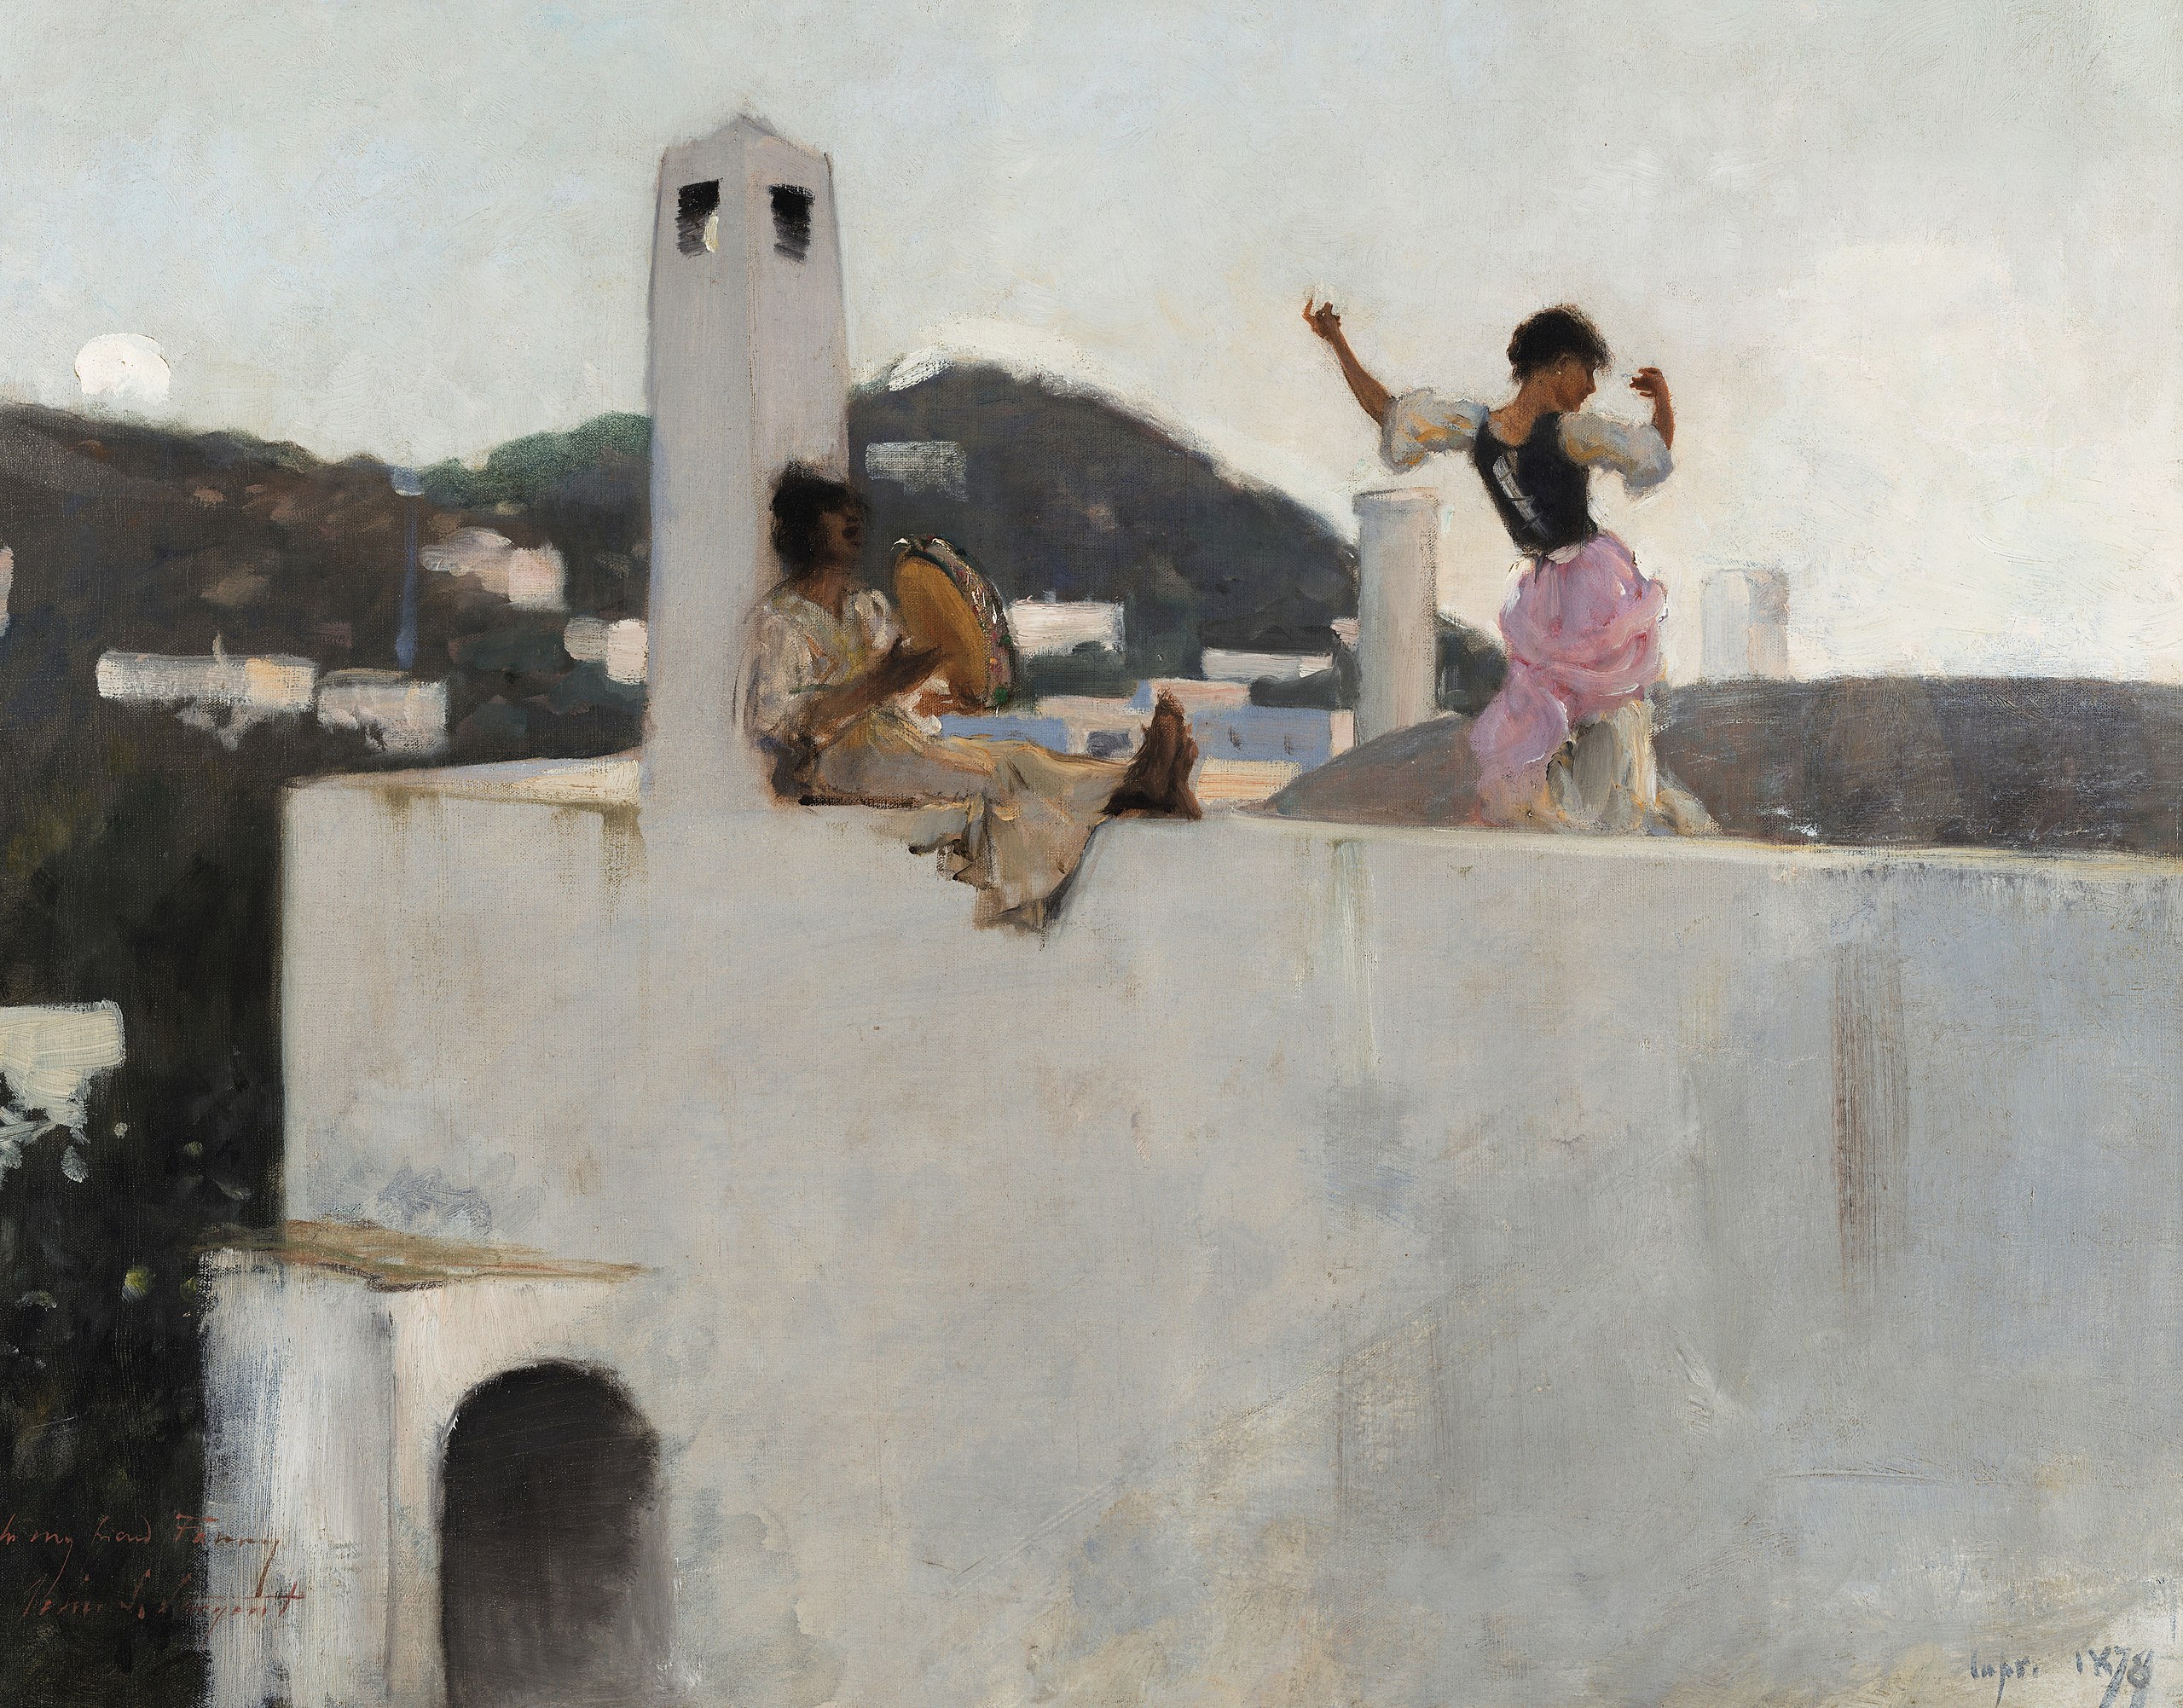 지붕 위의 카프리 소녀(Capri Girl on a Rooftop) by John Singer Sargent - 1878 - 50.8 x 63.5 cm 